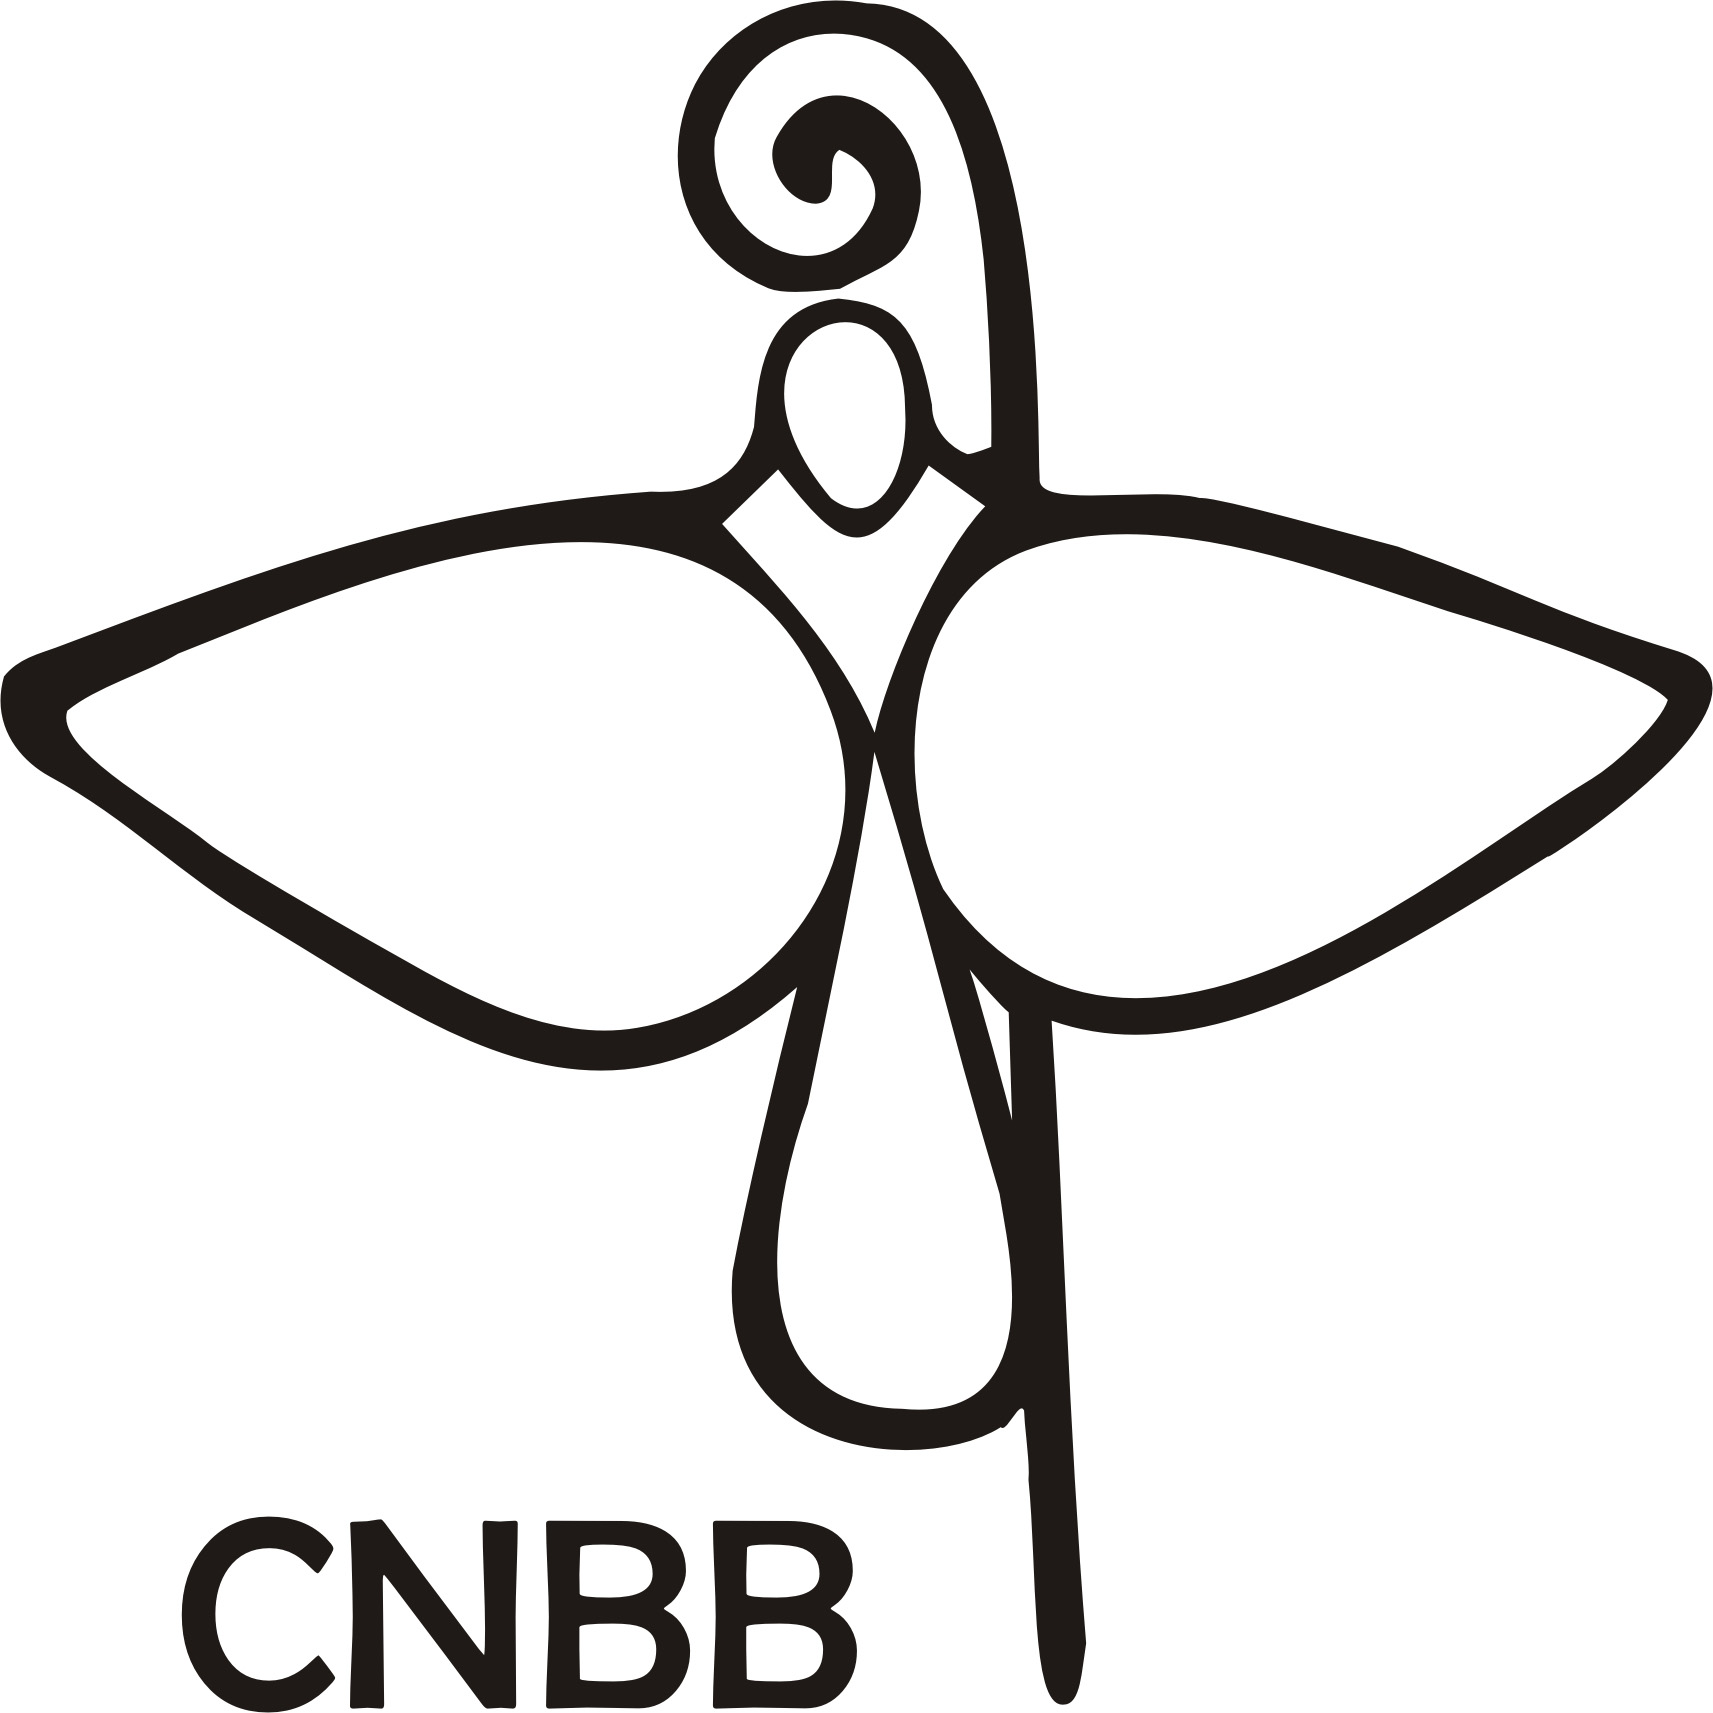 CNBB Podcast – Boletim Semanal para Rádios 19/08/2021